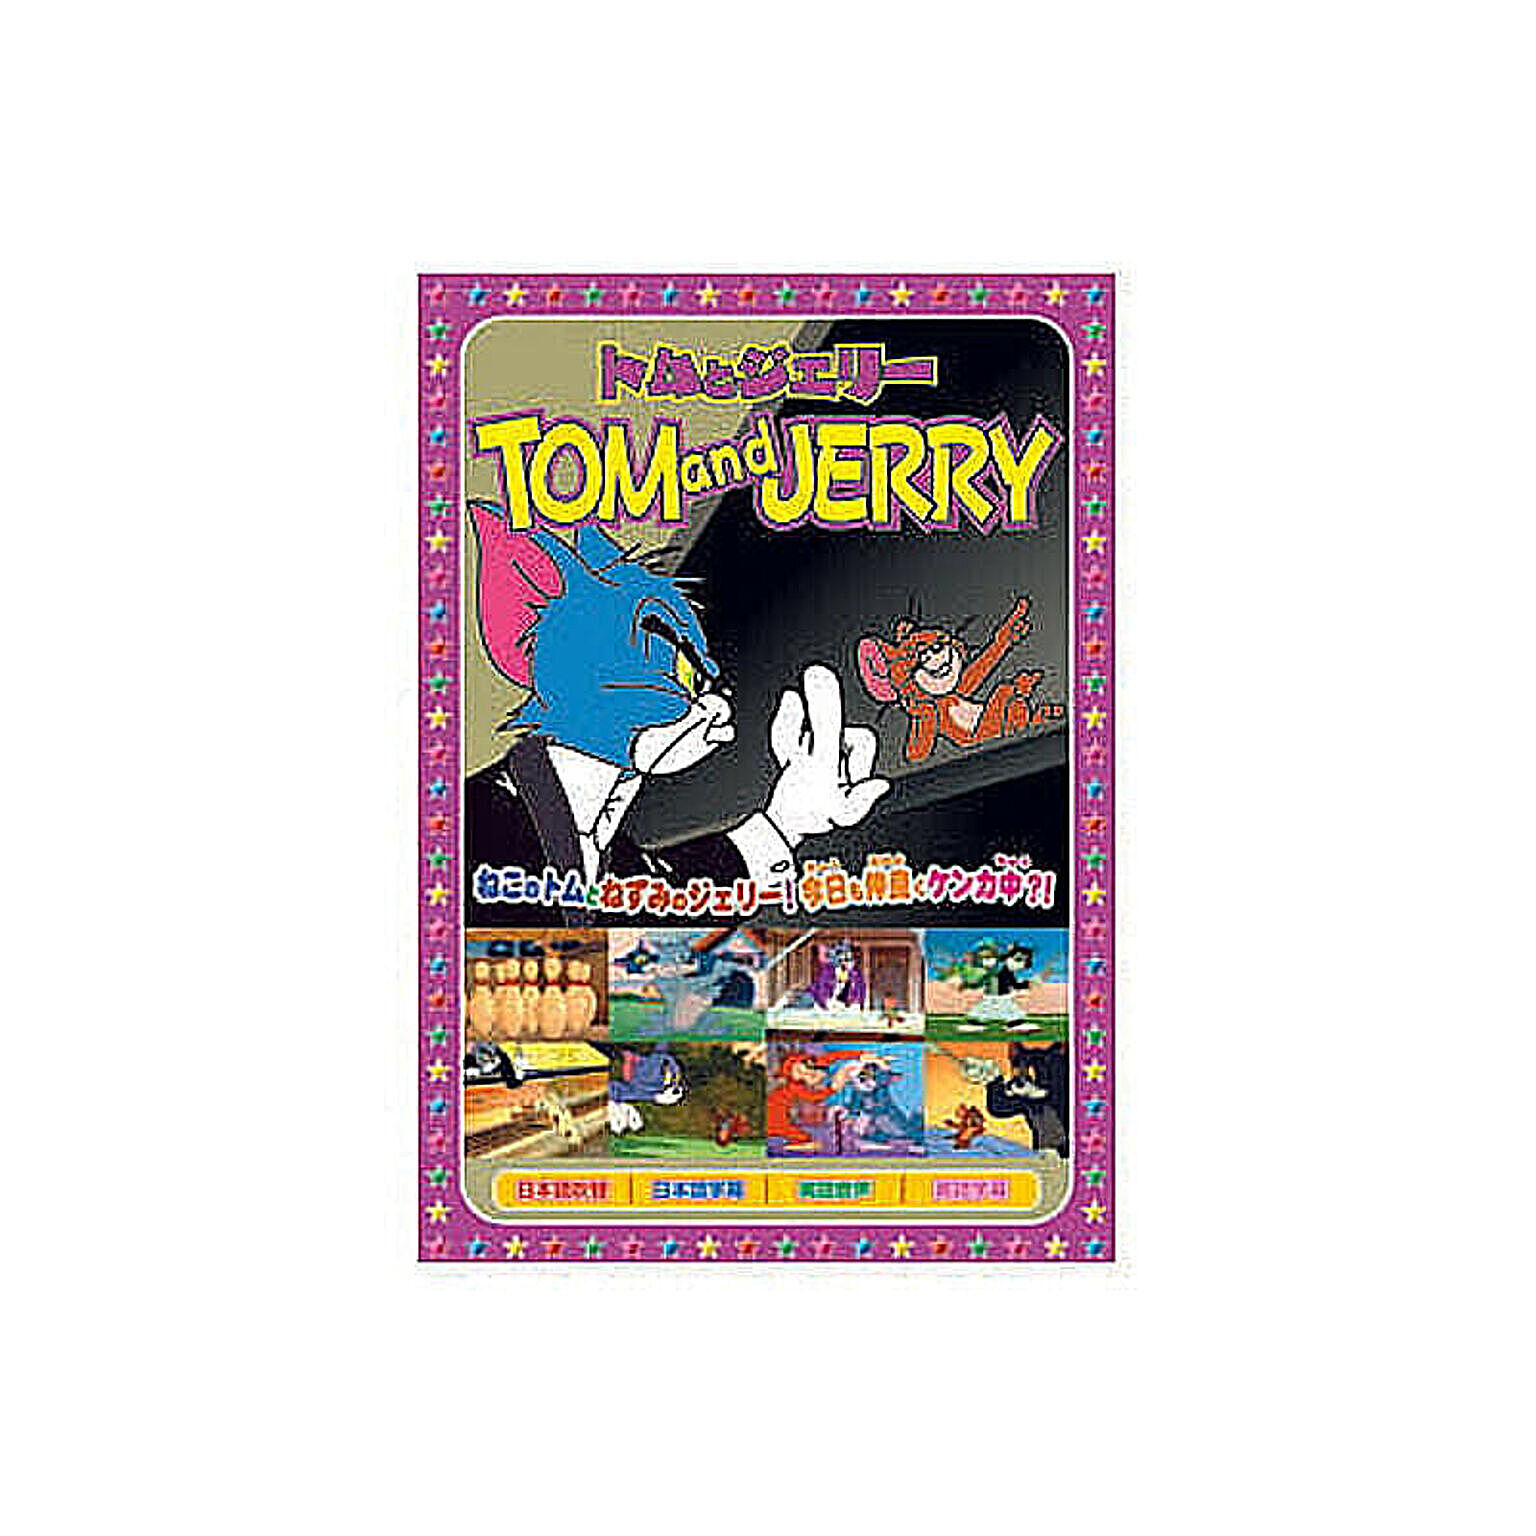 トムとジェリー(楽しいボーリング、他全8話) DVD 管理No. 4961523255062